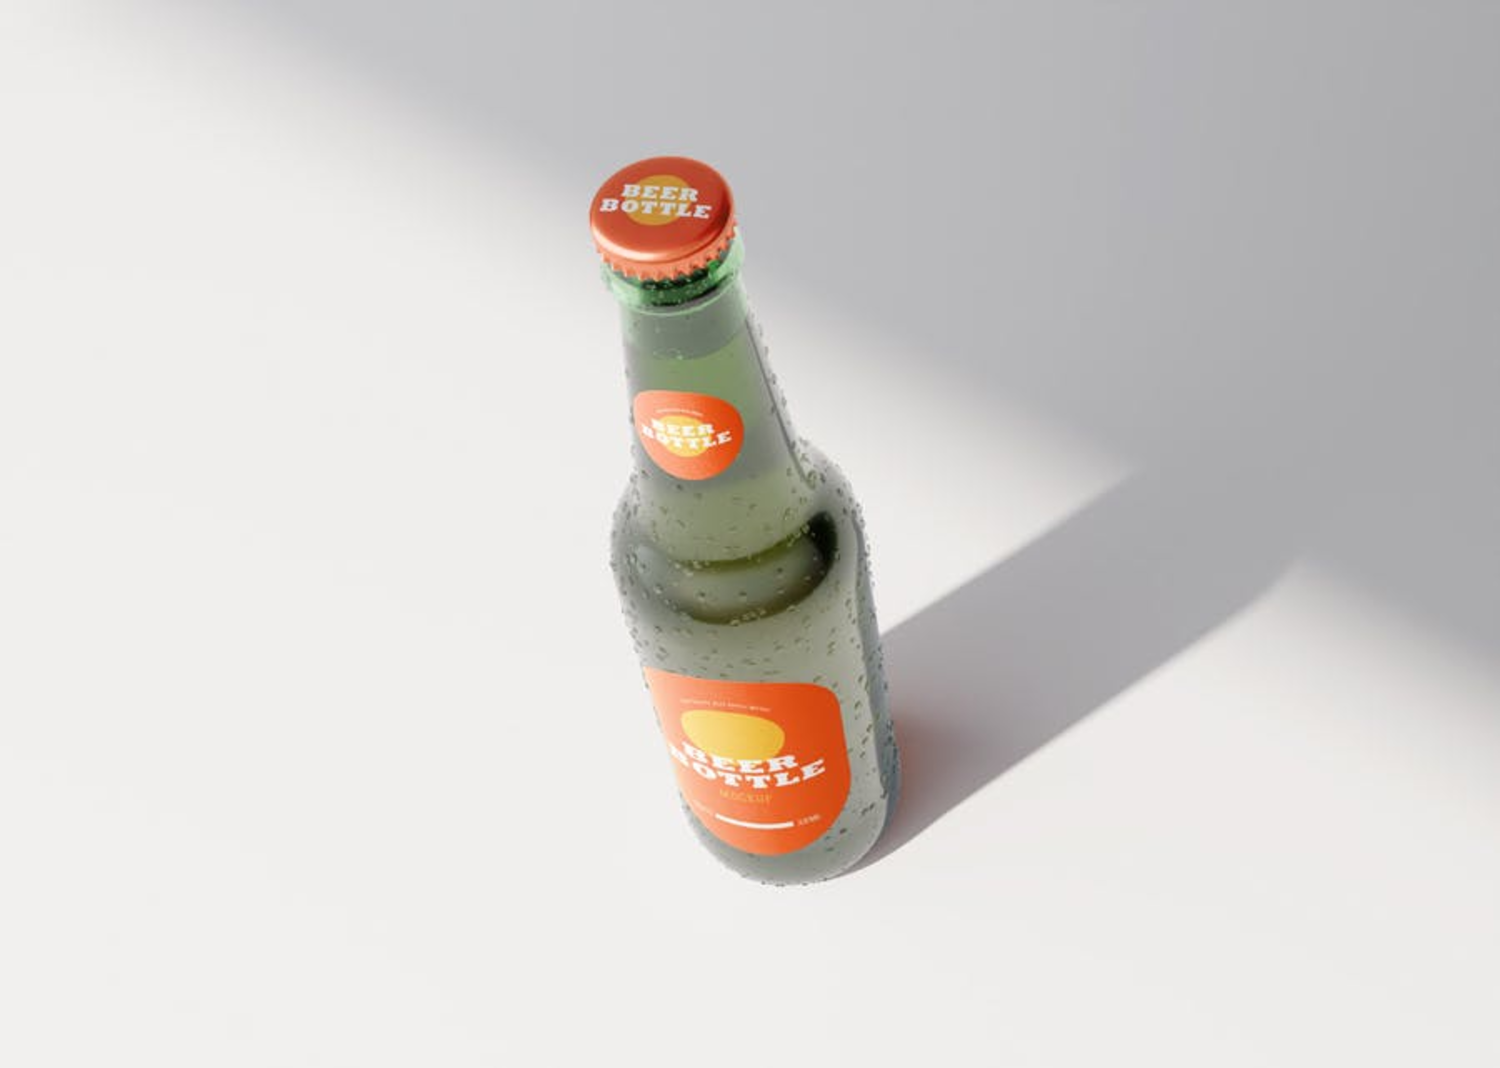 79 啤酒可乐玻璃瓶品牌包装设计样机模板 Beer Bottle Mockup 3